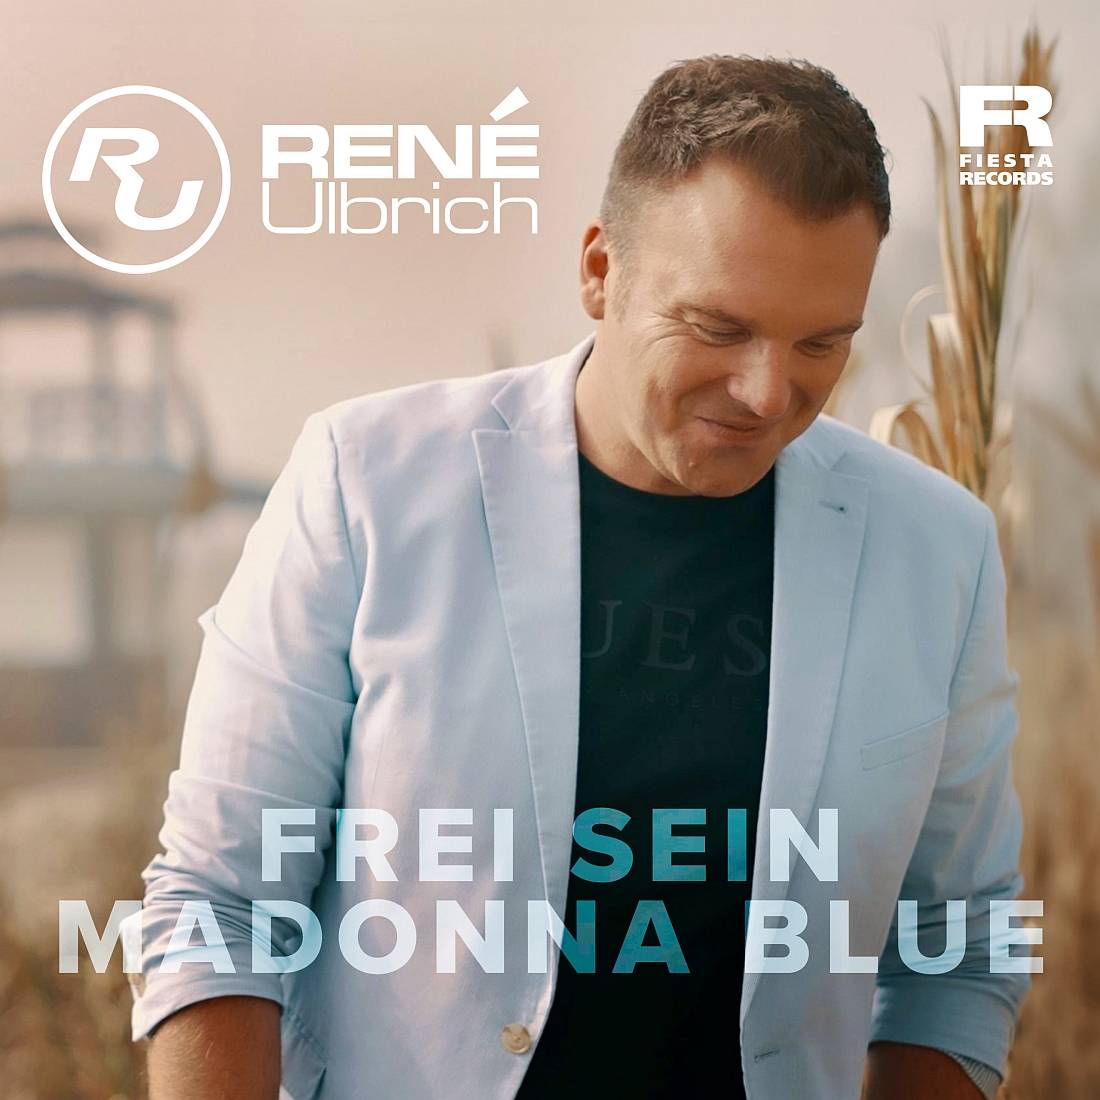 René Ulbrich - Frei sein - Madonna Blue (Fiesta Records)